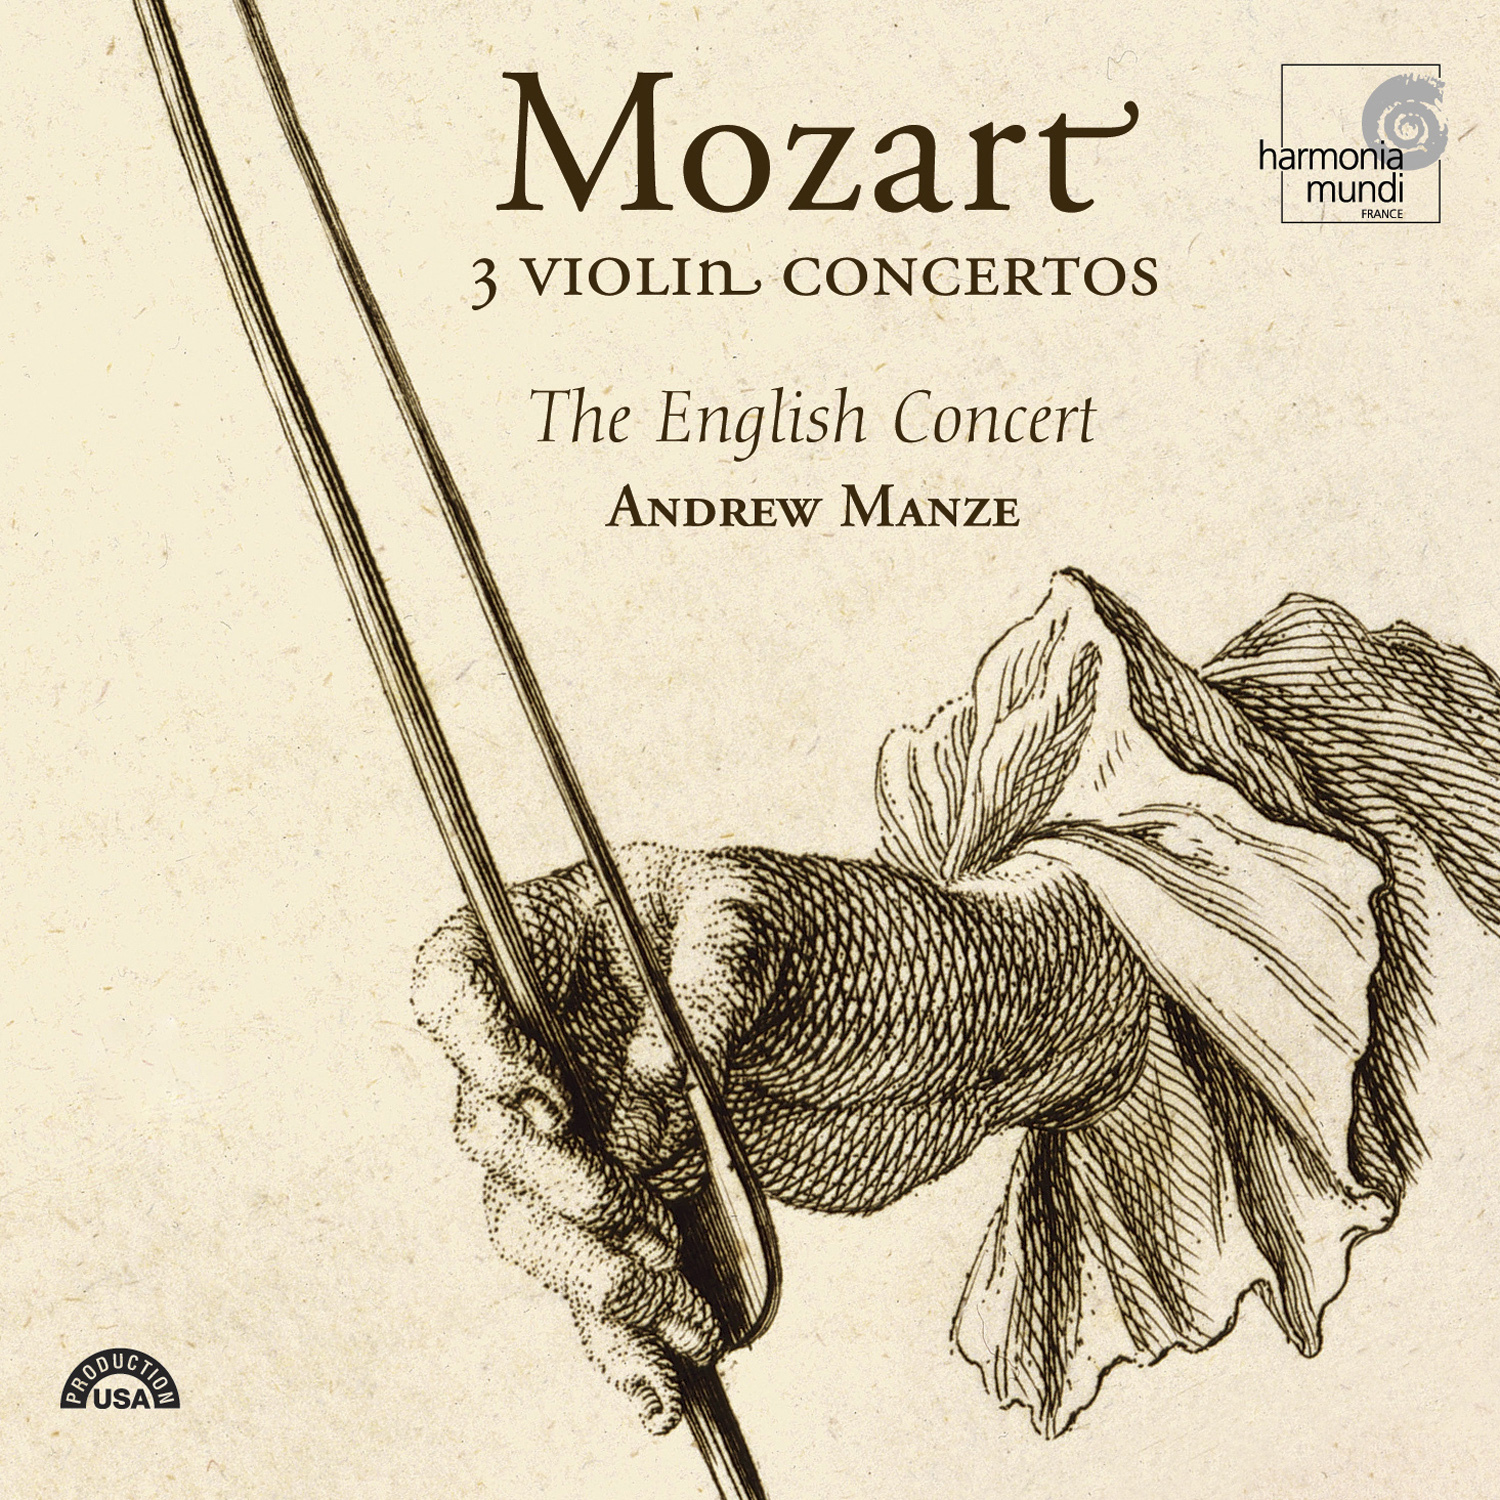 Violin Concerto No. 4 in D major, K. 218: III. Rondo: Andante grazioso - Allegro ma non troppo